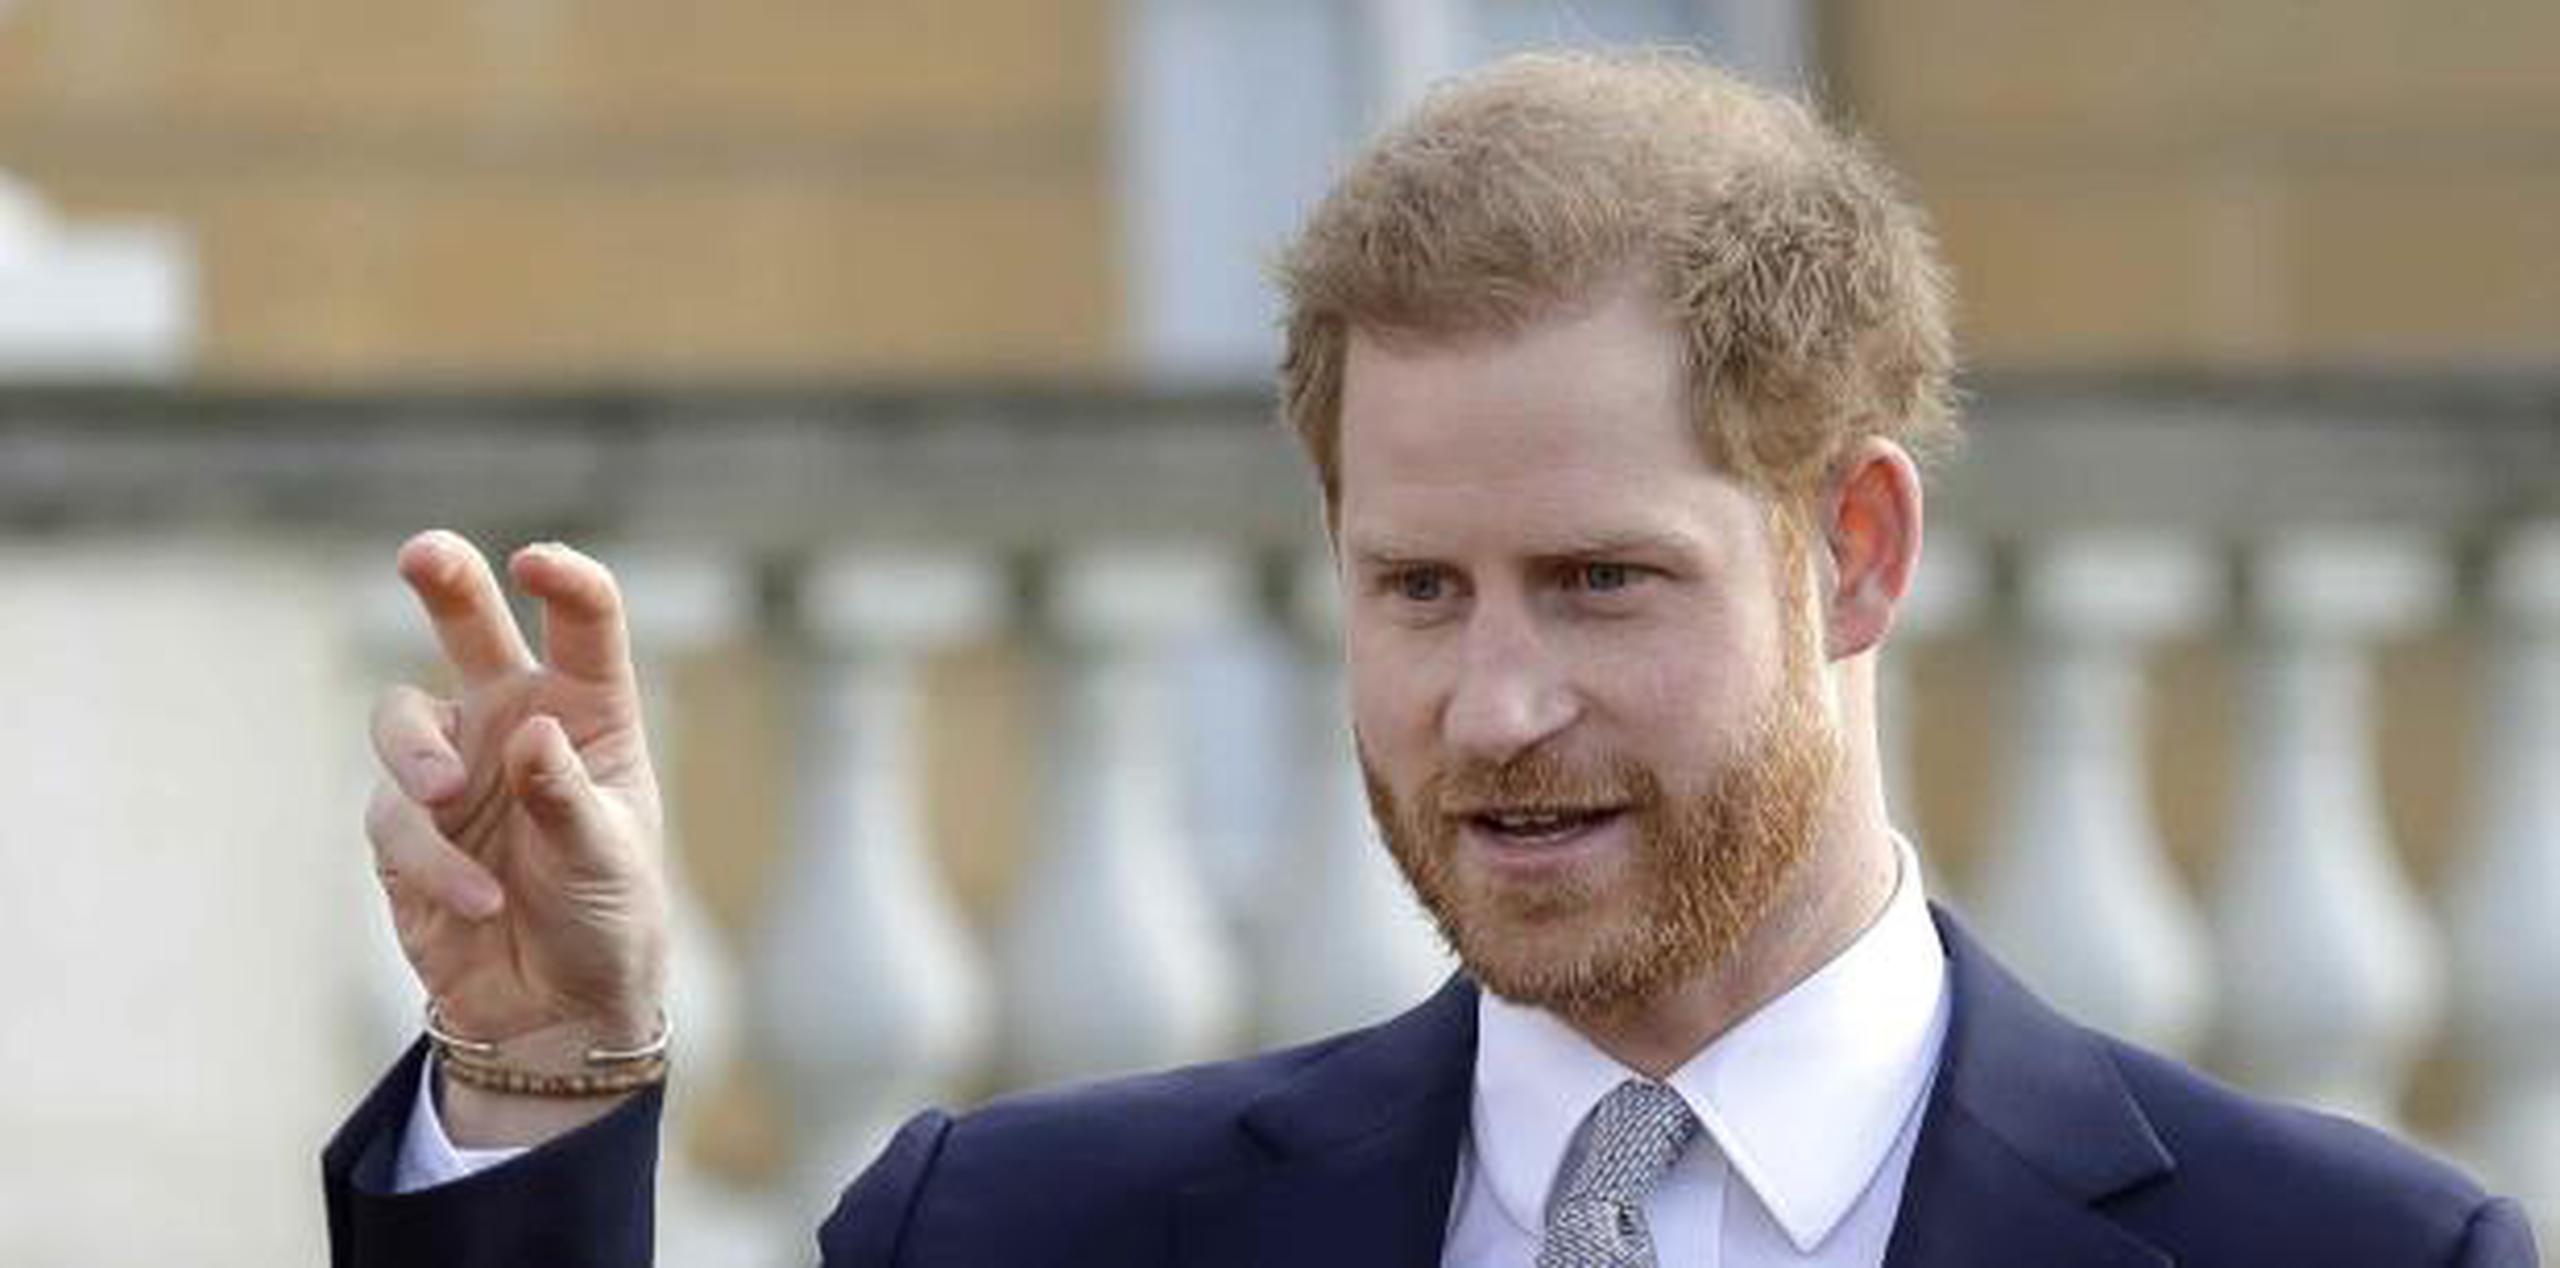 El príncipe Harry en el Palacio de Buckingham hoy, jueves. (AP / Kirsty Wigglesworth)